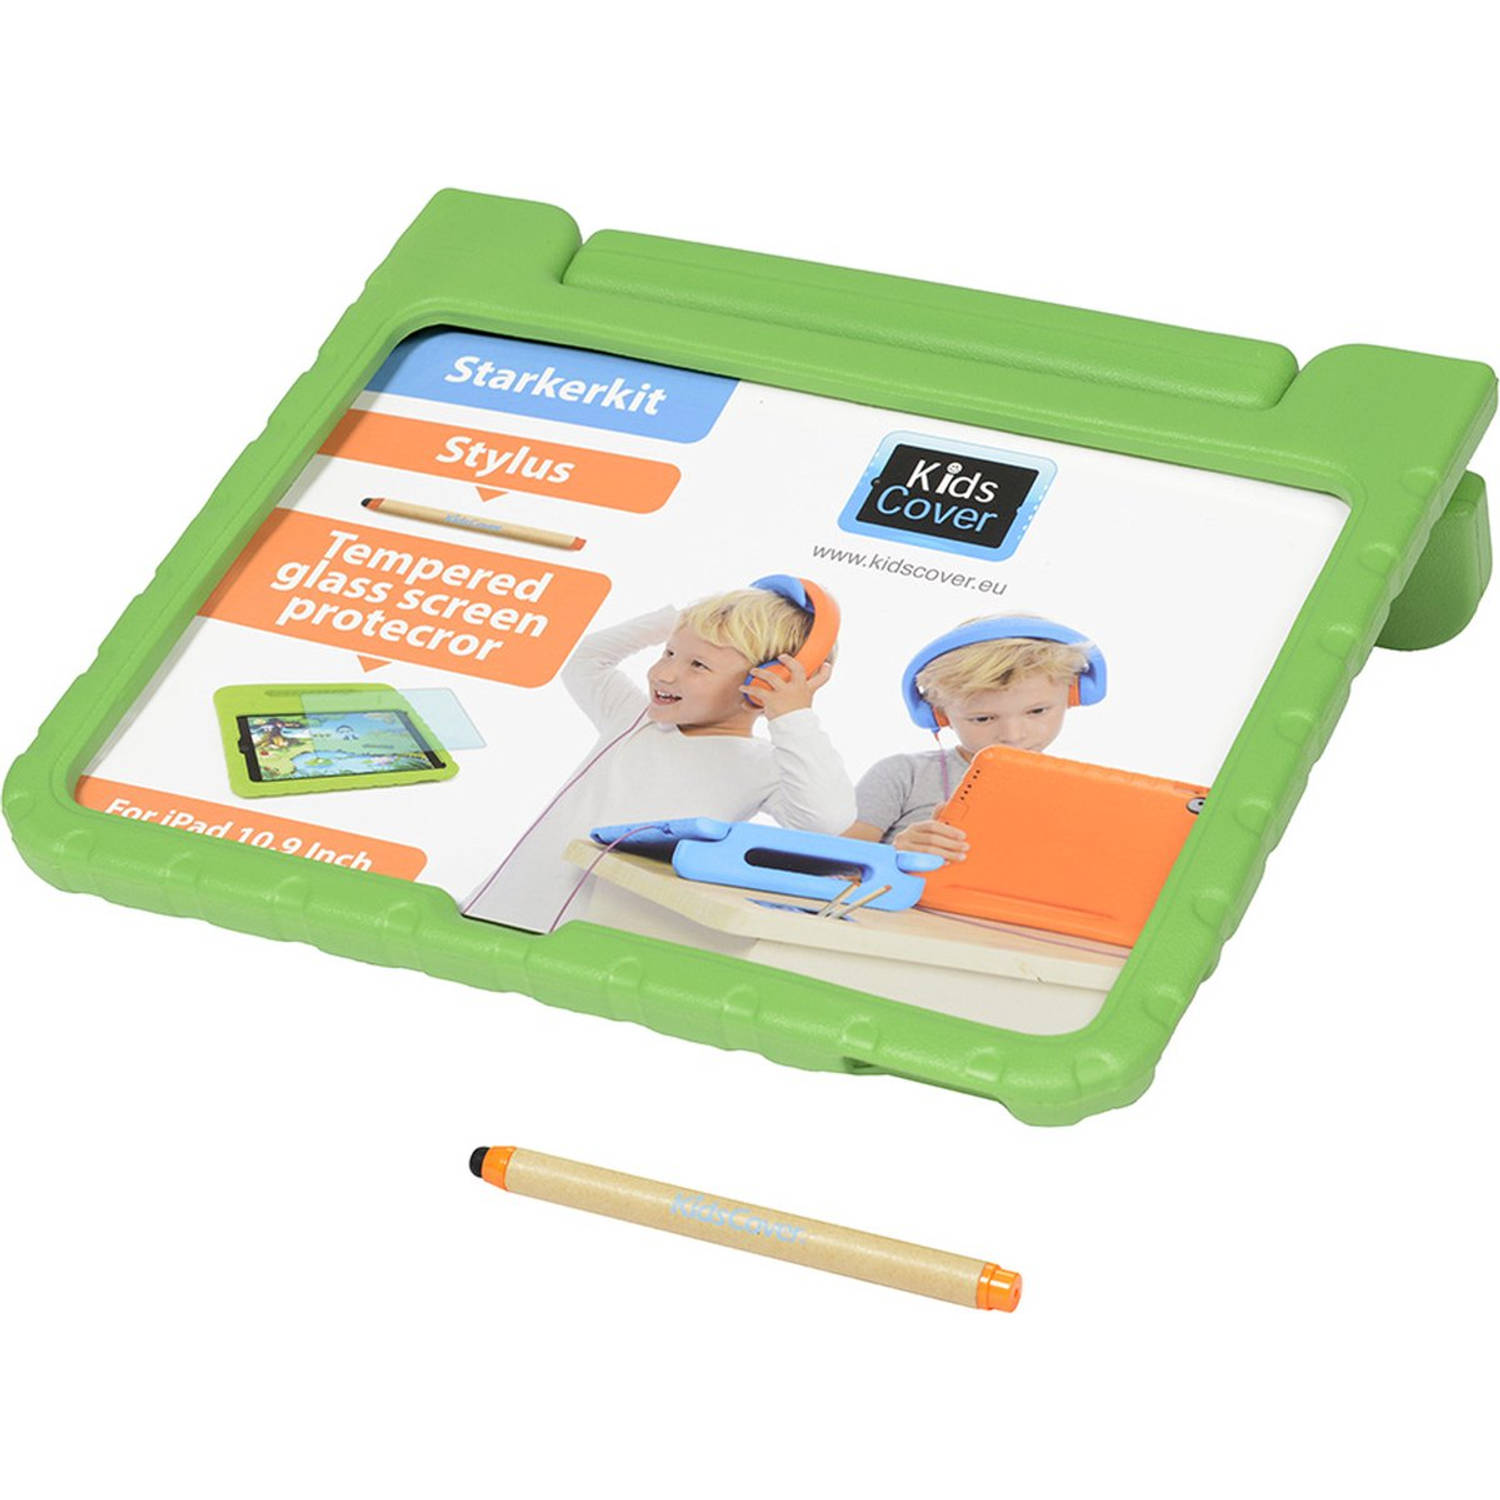 KidsCover iPad 10.9 groen set INCLUSIEF stylus & glazen screenprotector hoes voor kinderen kidsproof